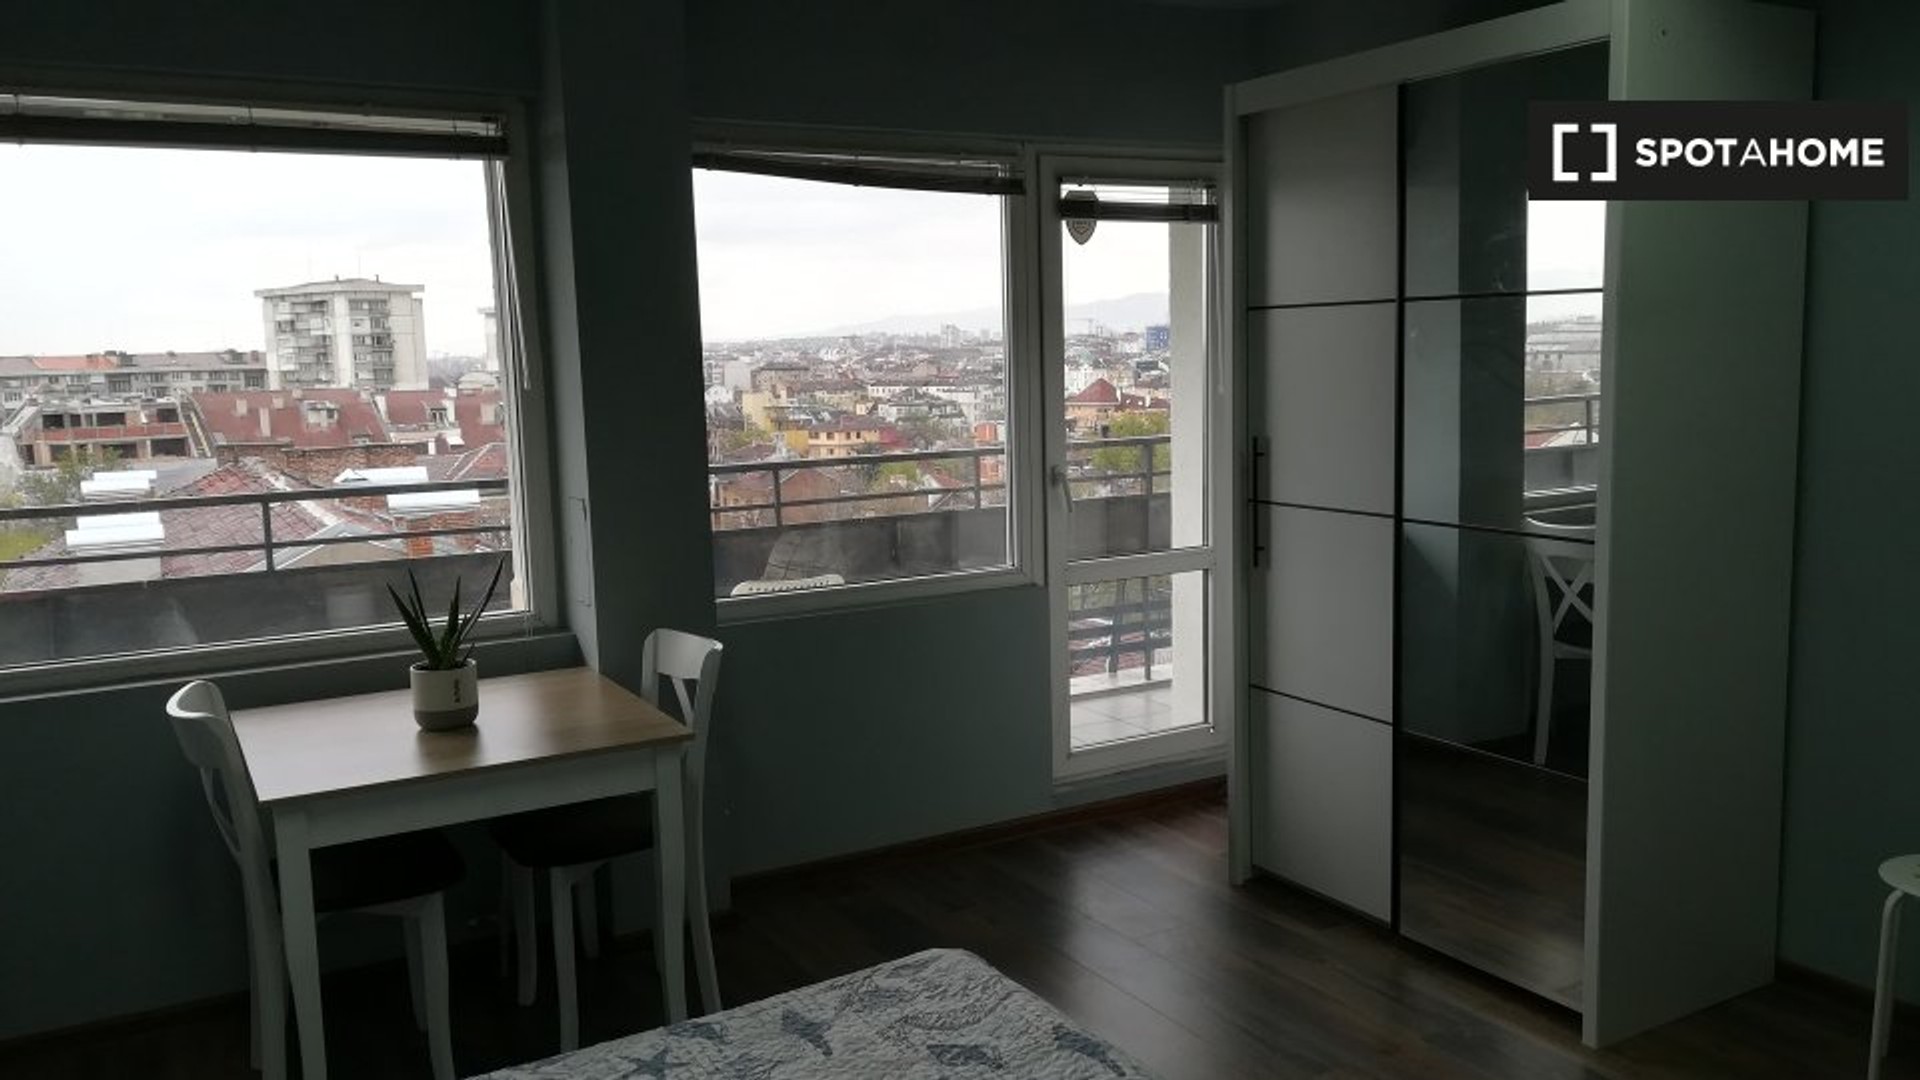 Cheap private room in Sofia